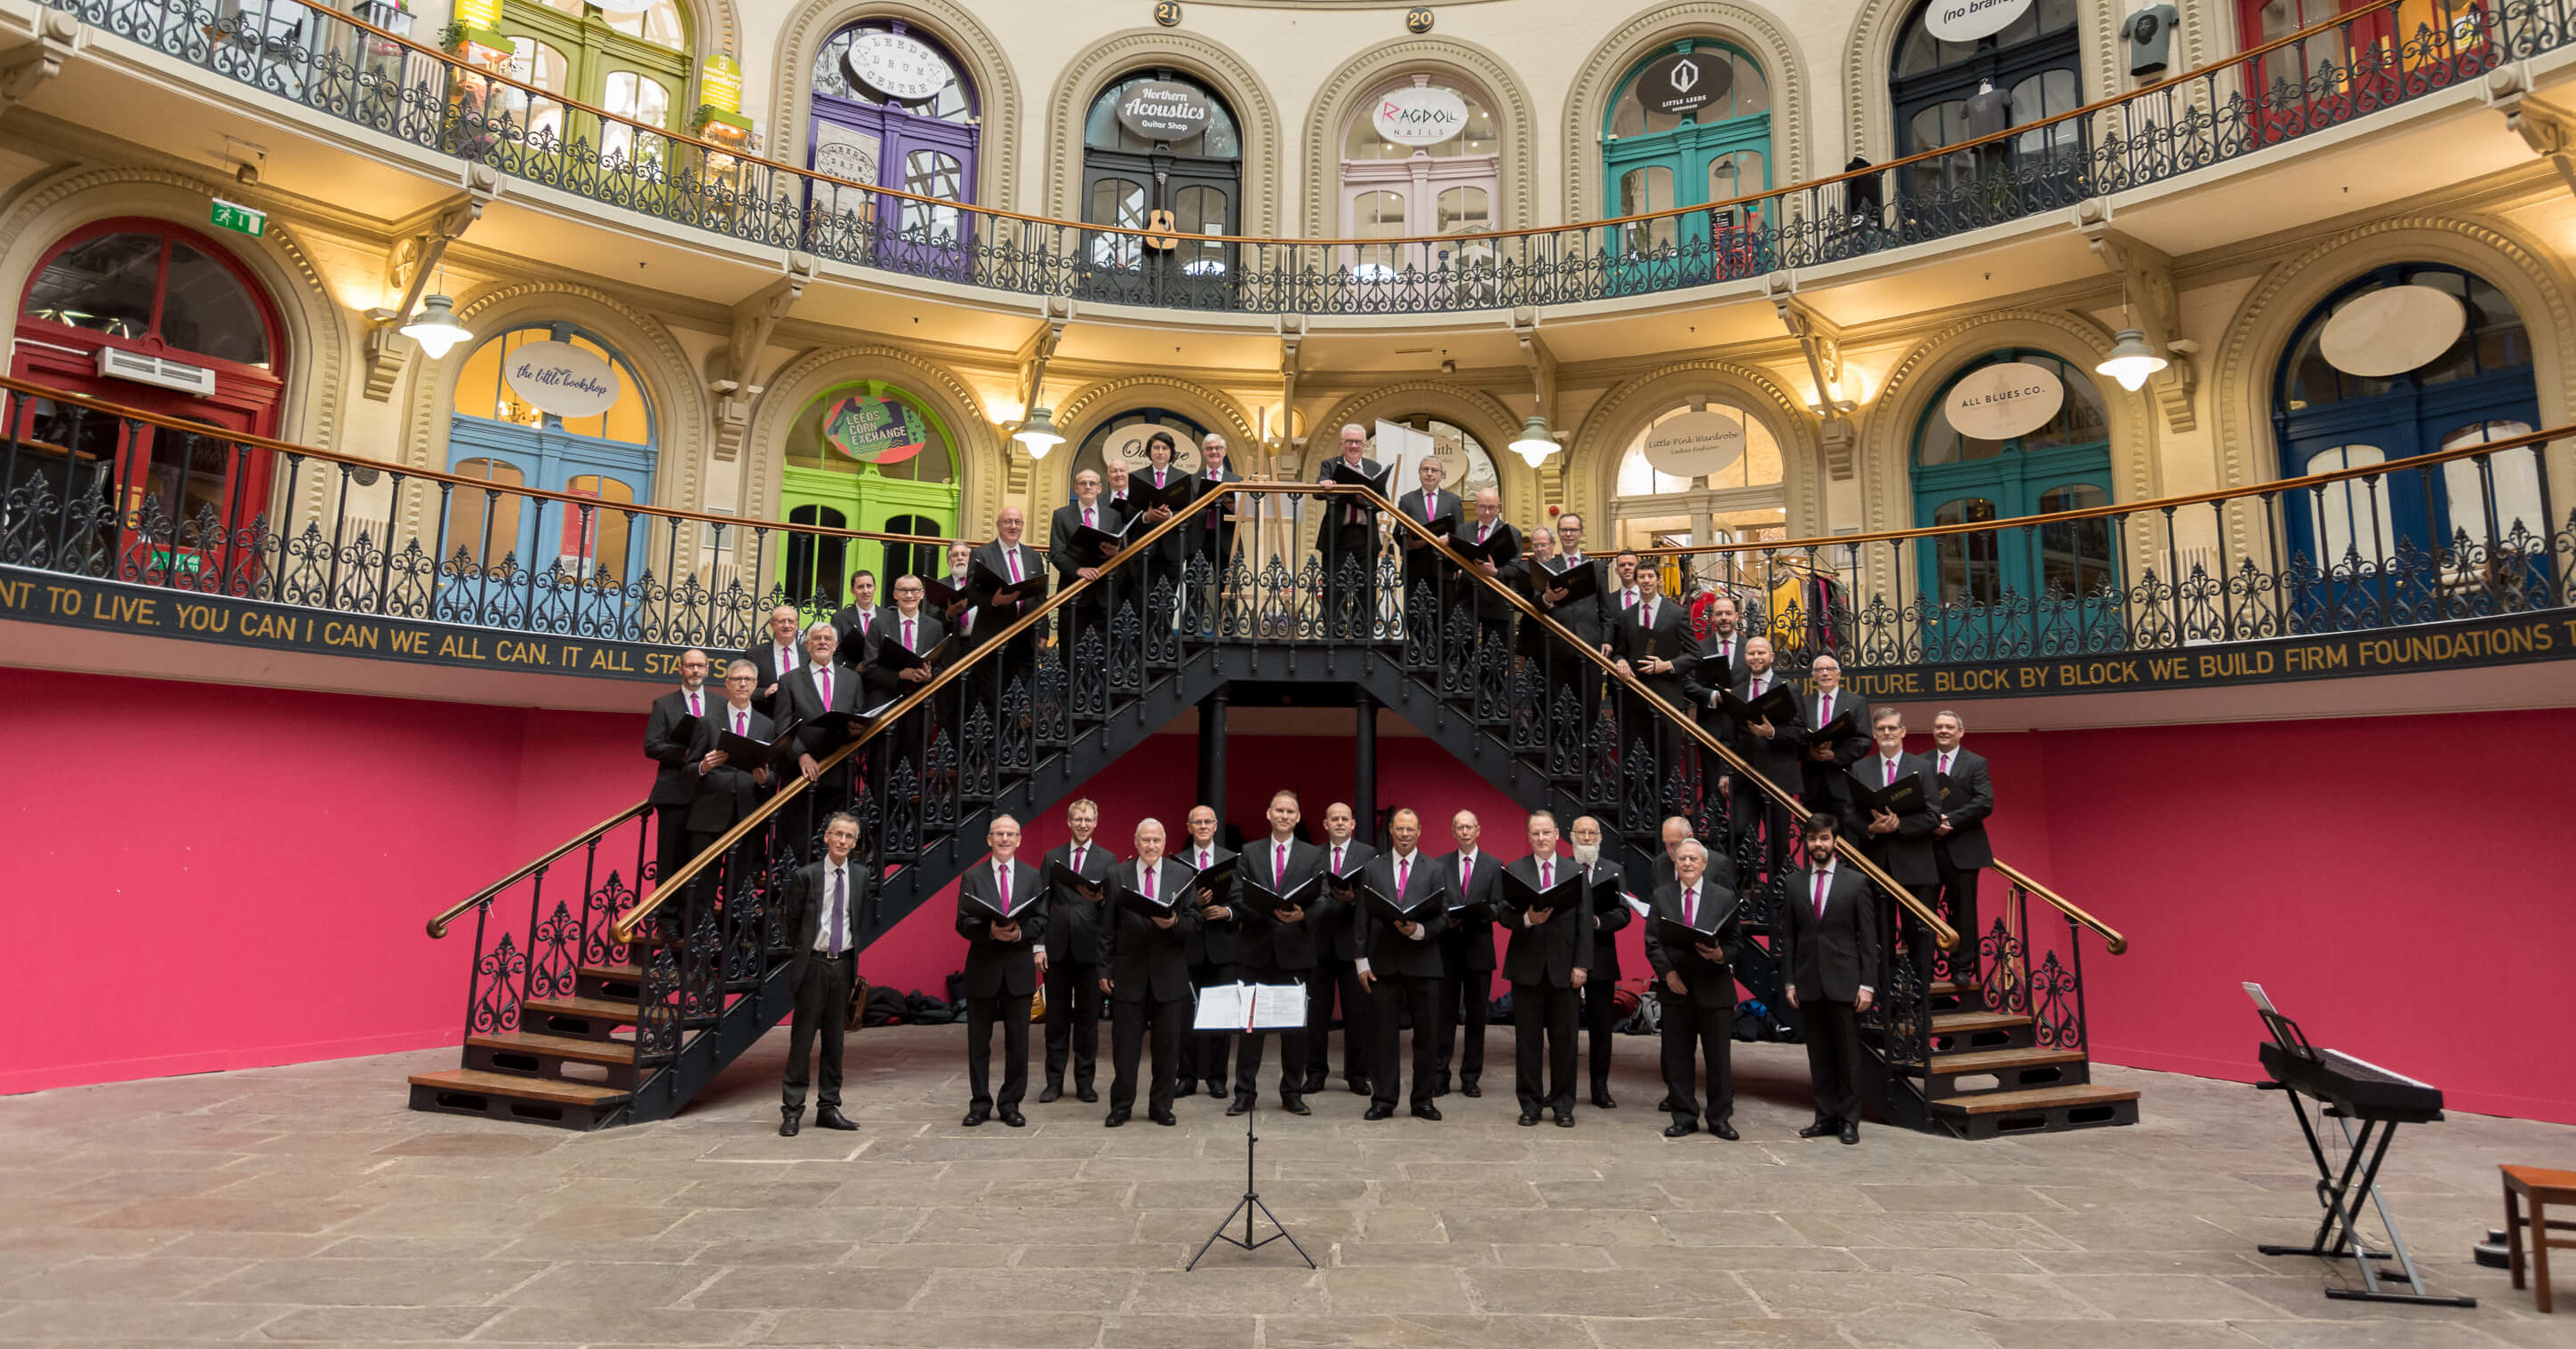 Leeds Male Voice Choir